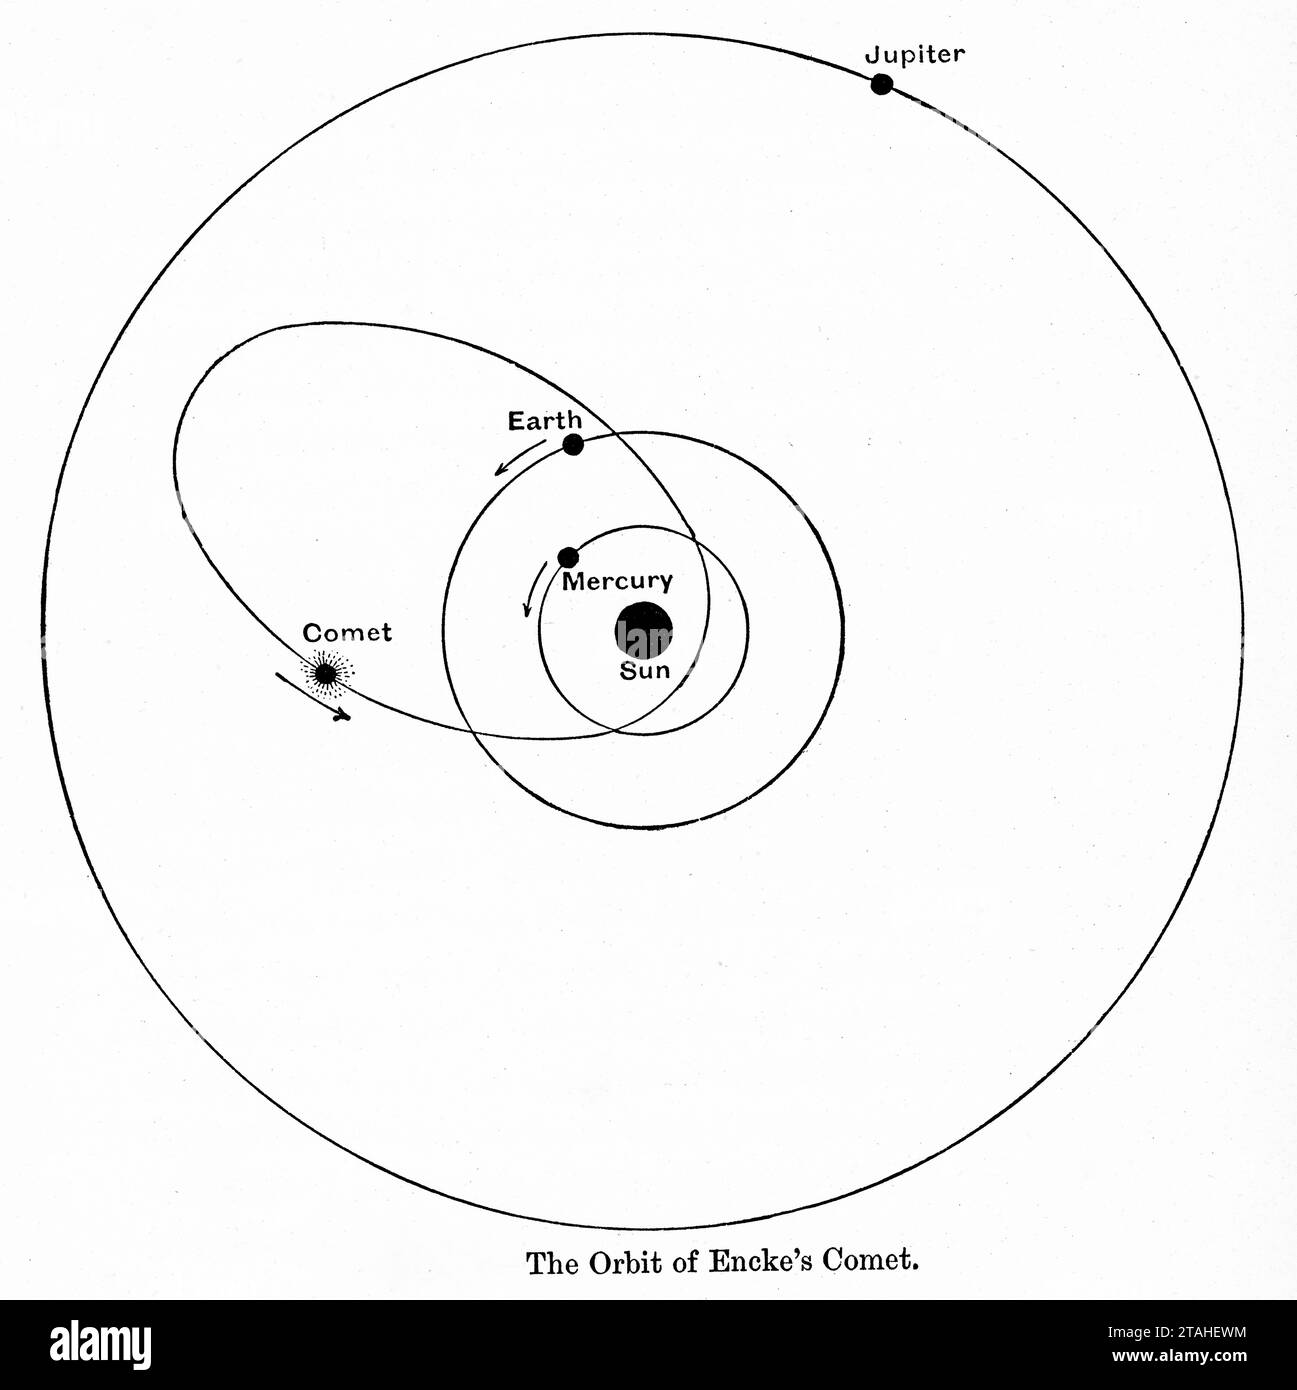 L'orbita della Cometa di Encke, 1889. Cometa Encke o Cometa di Encke è una cometa periodica che completa un'orbita del Sole una volta ogni 3,3 anni. Encke fu registrata per la prima volta da Pierre Méchain (1744-1804) nel 1786, ma non fu riconosciuta come cometa periodica fino al 1819, quando la sua orbita fu calcolata da Johann Franz Encke (1791-1865). Foto Stock